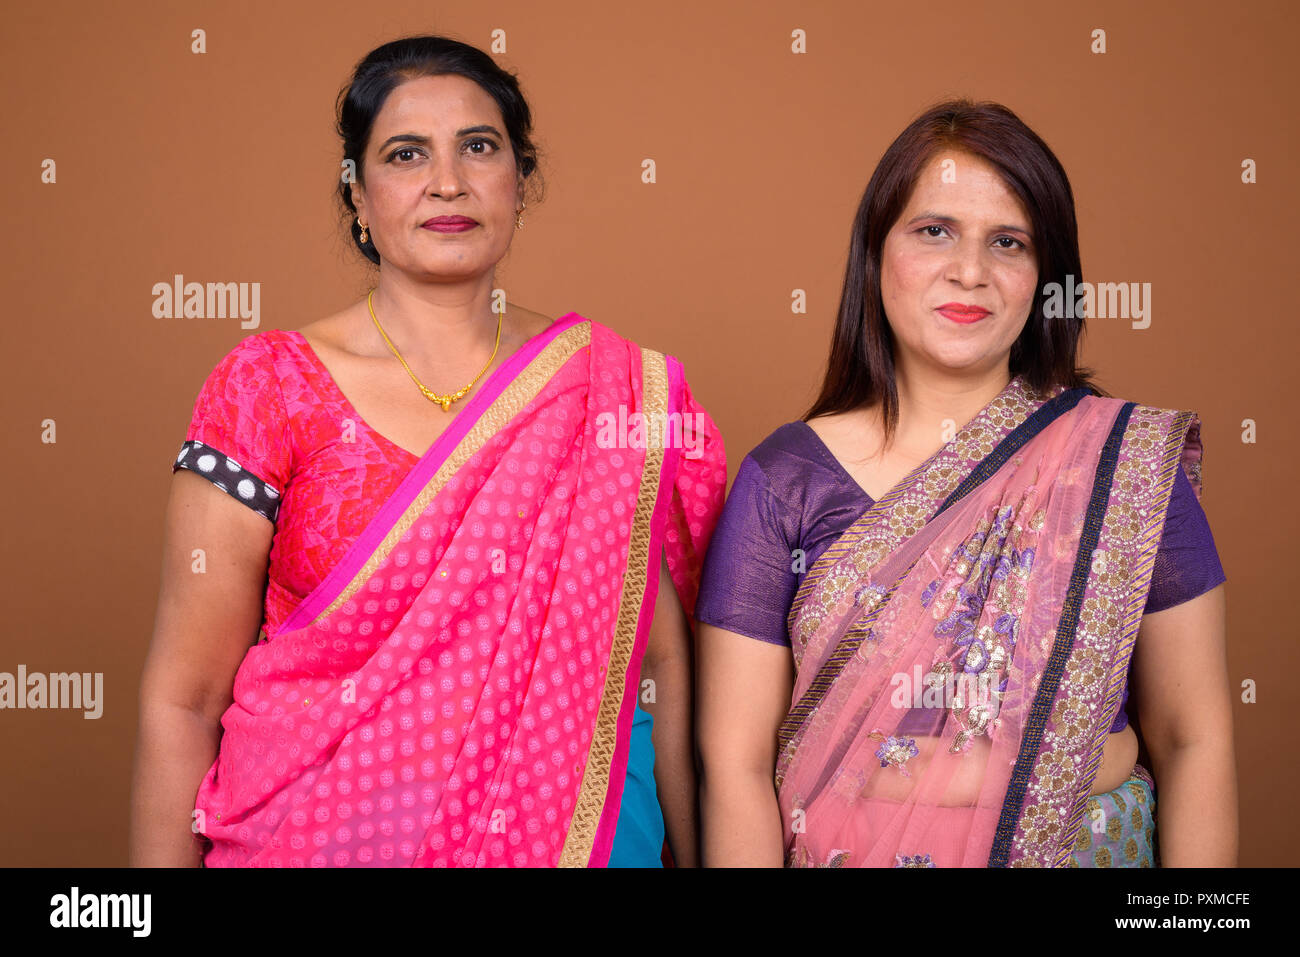 Deux femmes indiennes portant des vêtements traditionnels indiens Sari Banque D'Images